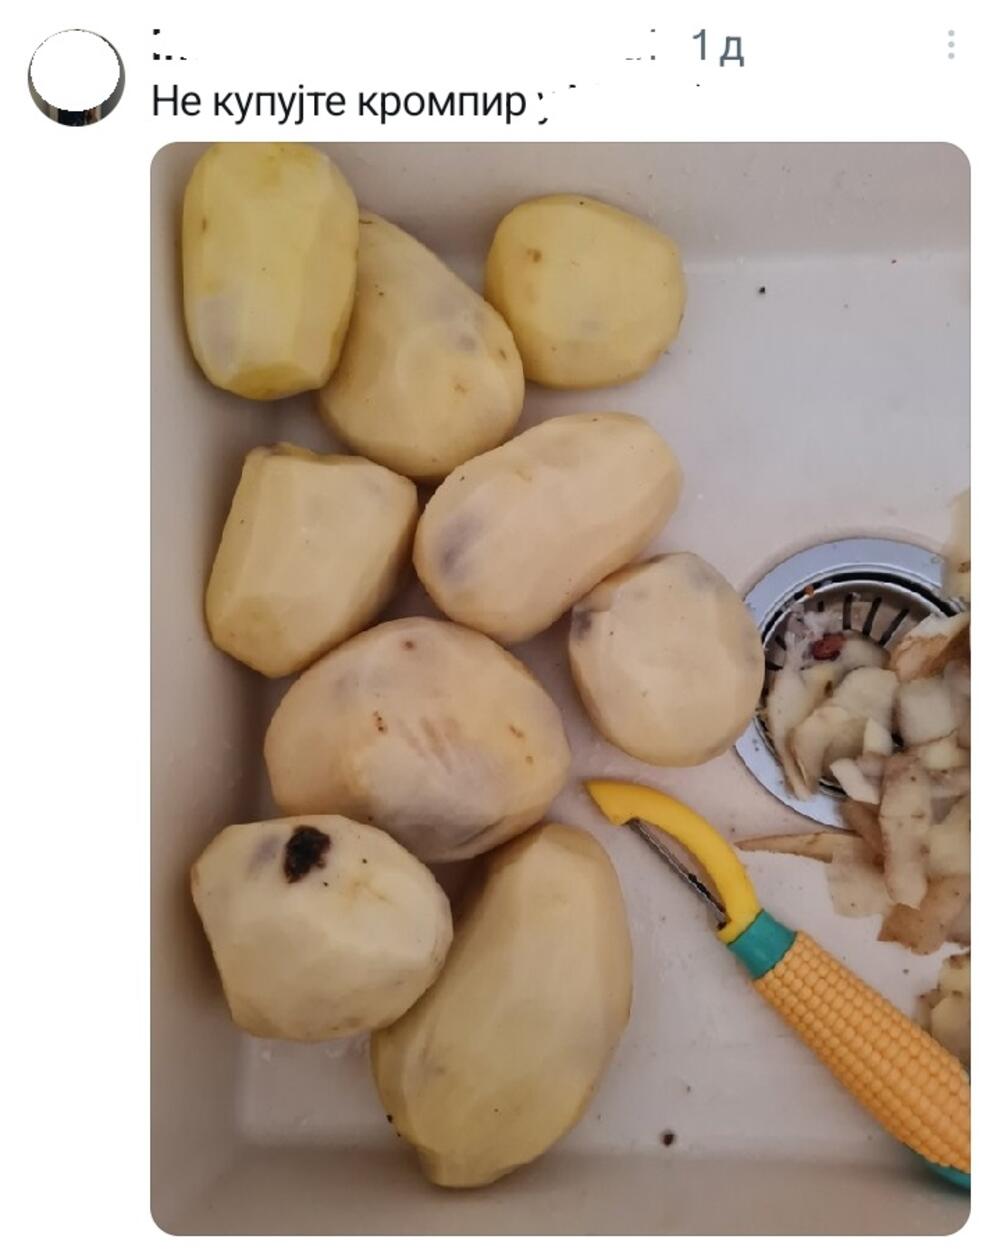 Beograđanku sačekao šok nakon što je oljuštila krompir